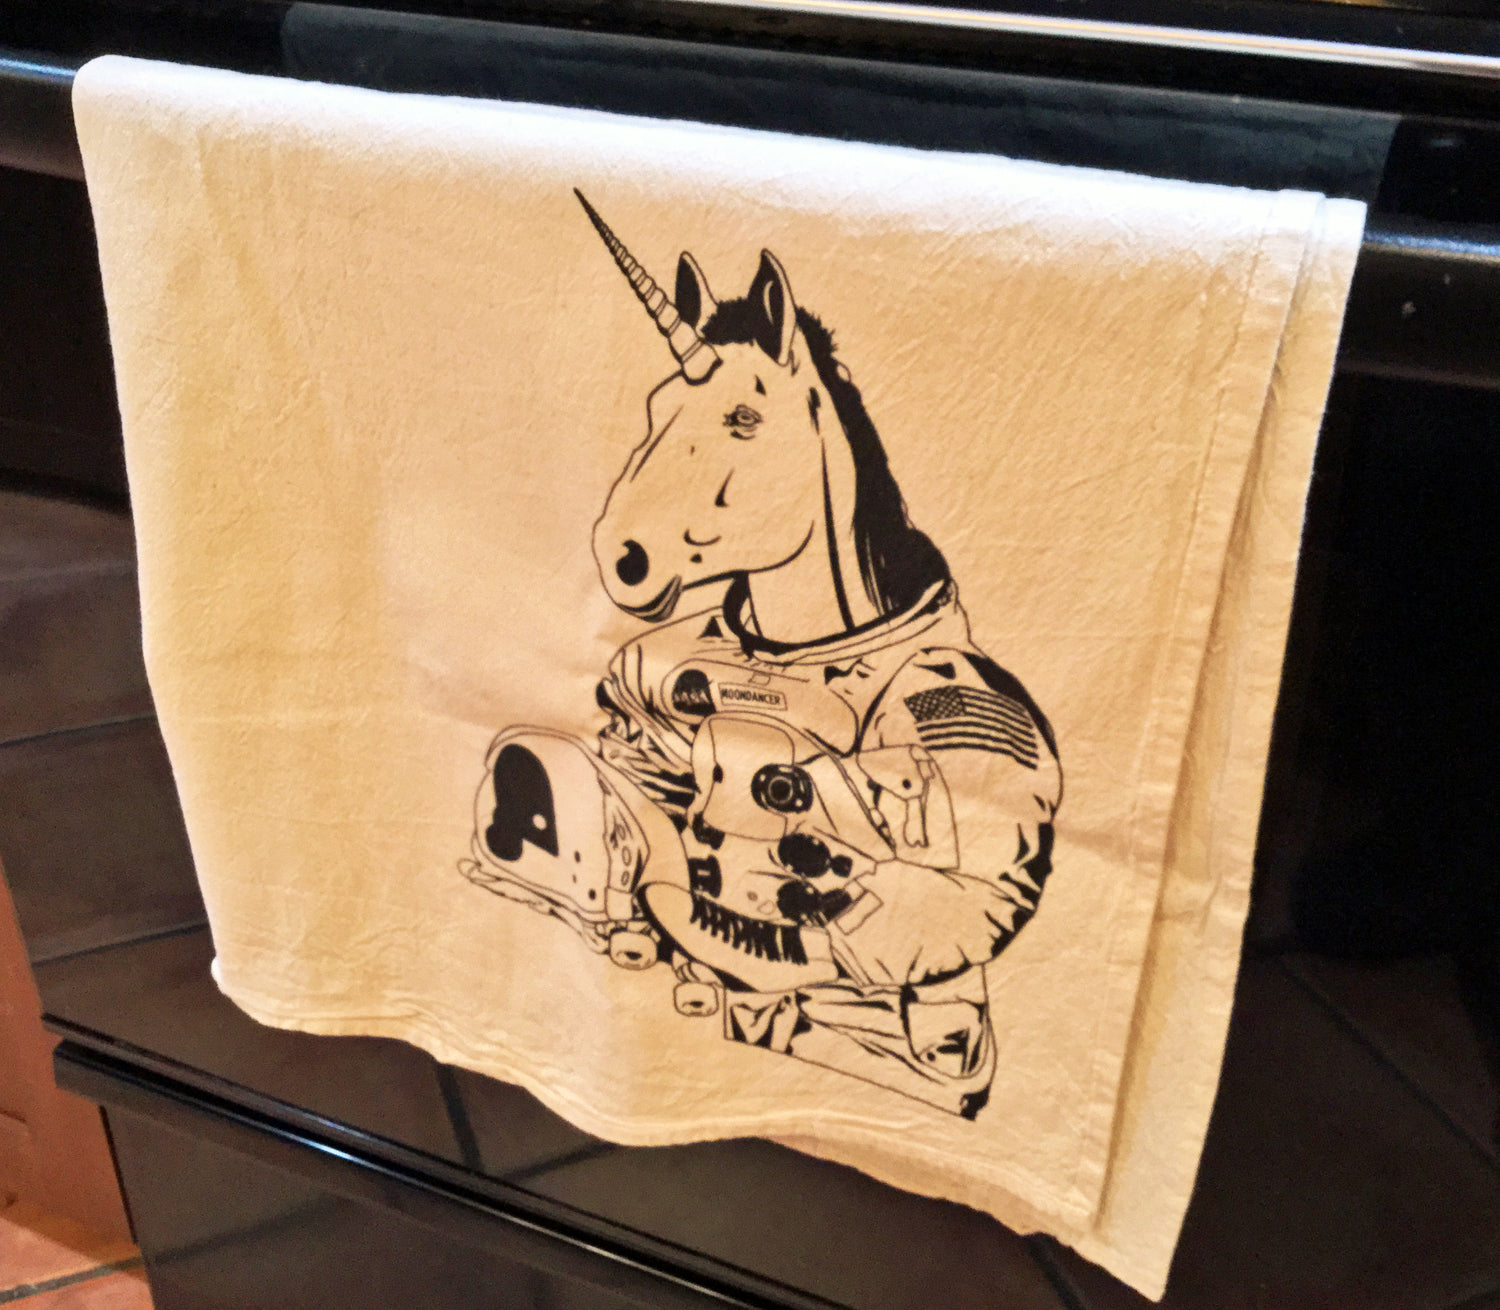 Kitchen Towel: Astronaut Unicorn - B&W